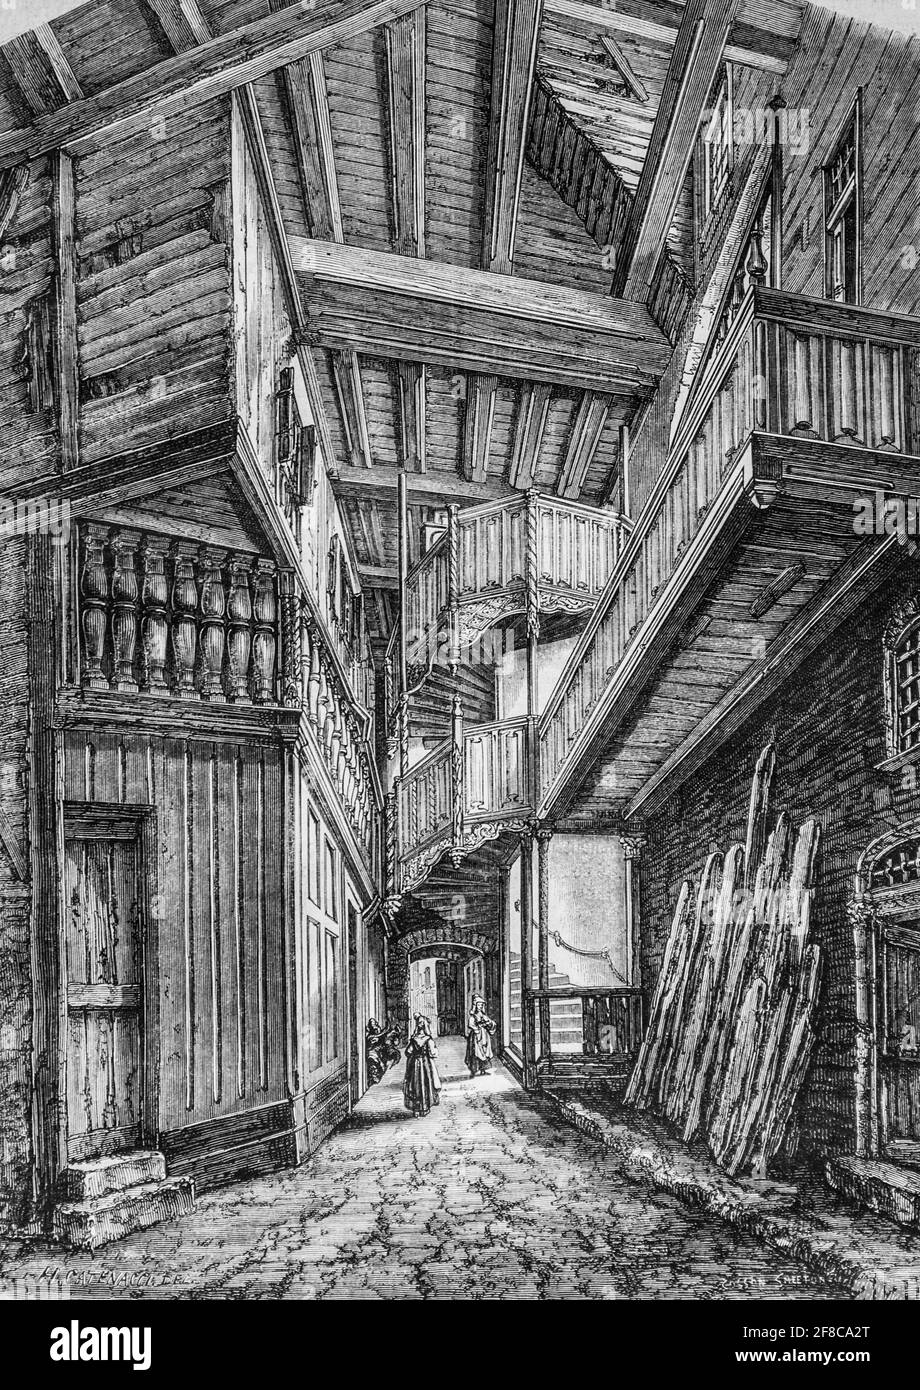 exterieur du conseieme siecle a vire, le magazin pittoresque par m. edouard charton 1870 Foto Stock